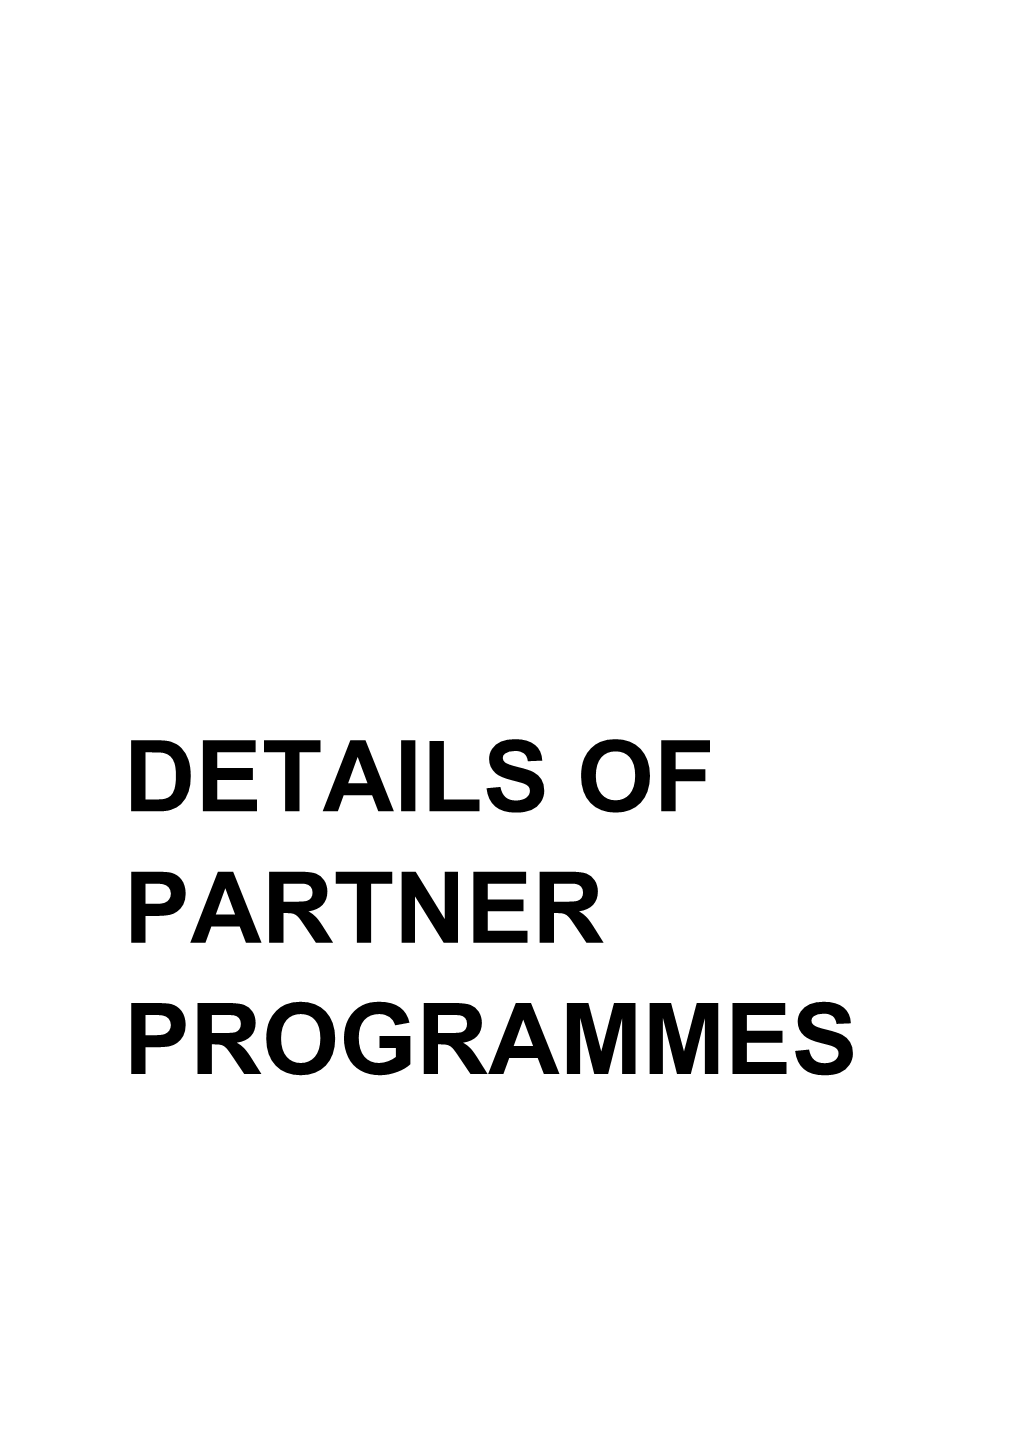 Details of Partner Programmes